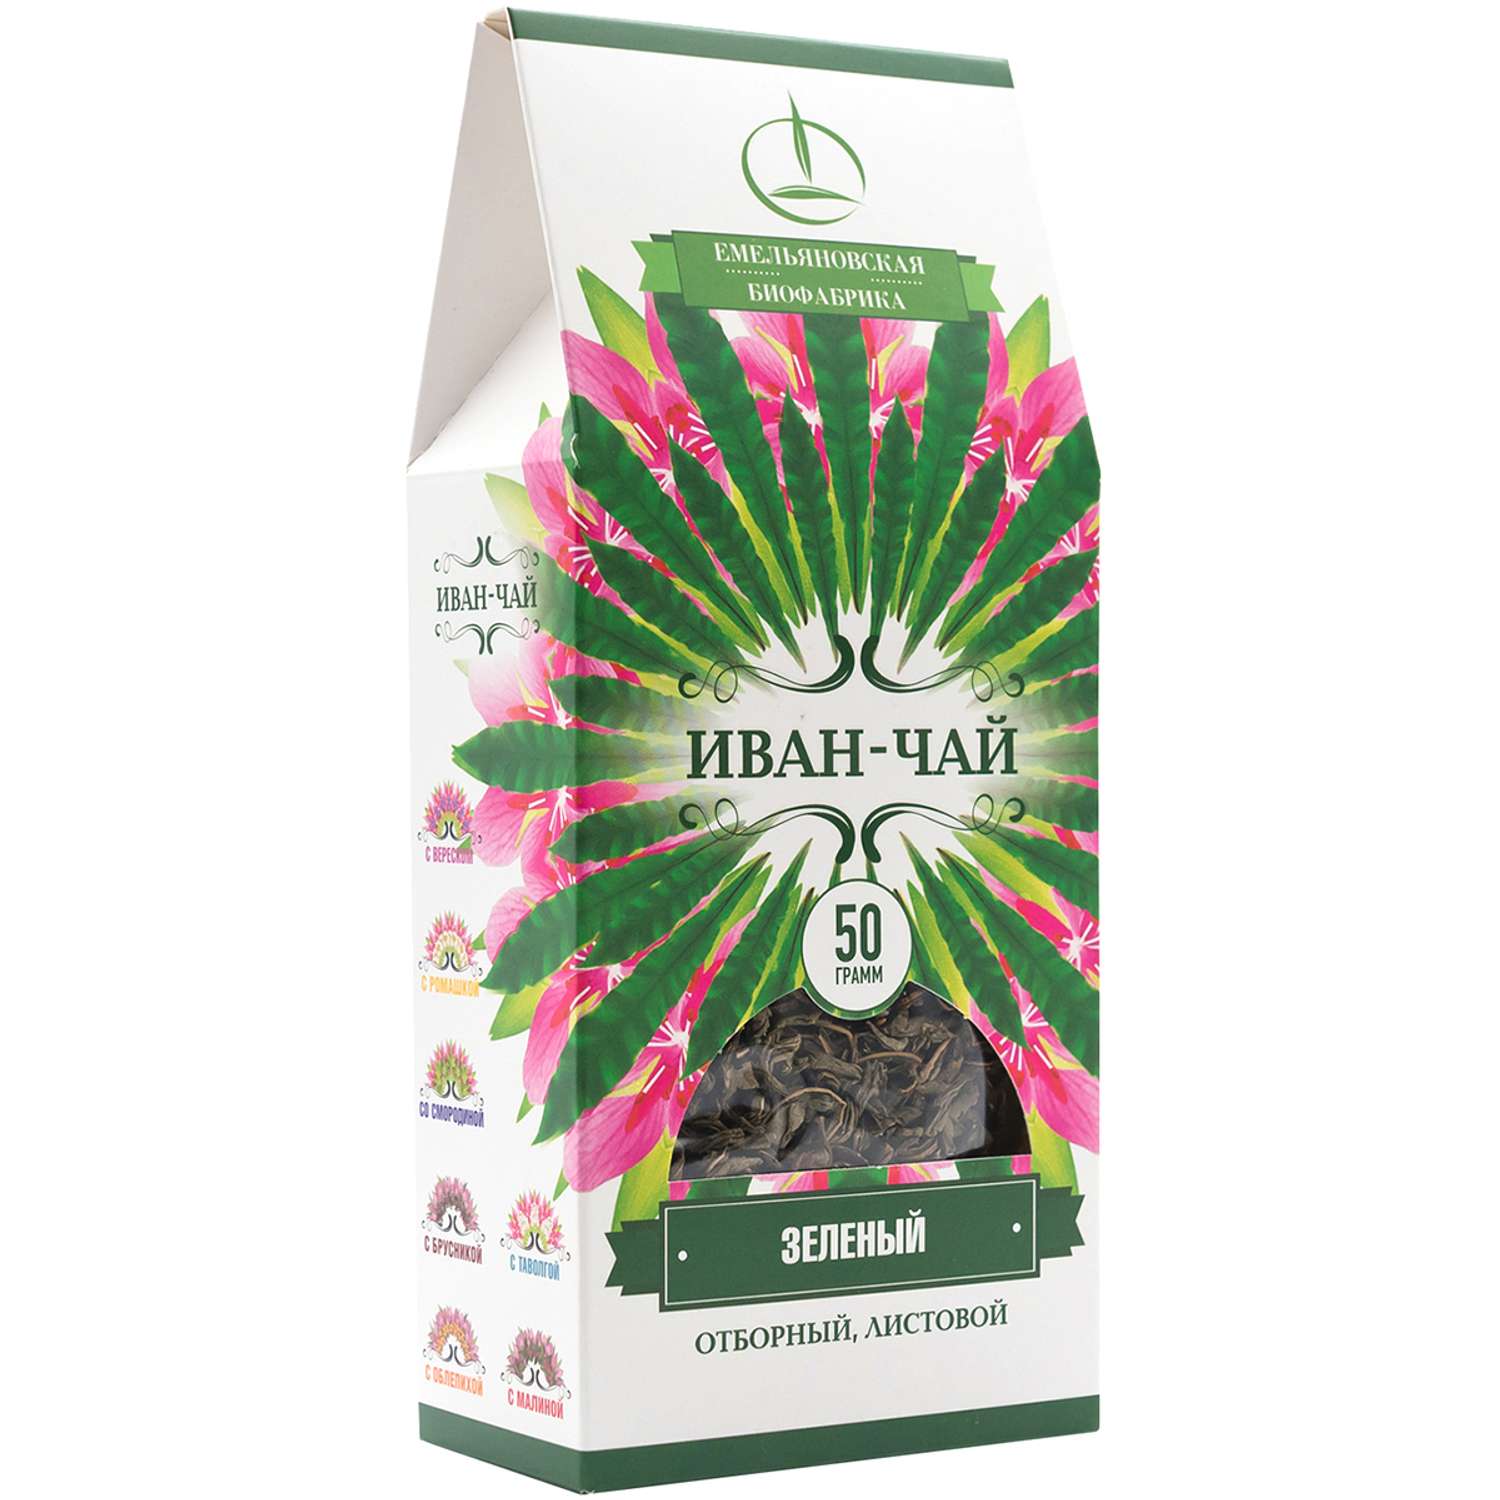 Иван-чай Емельяновская Биофабрика зеленый листовой 50 г - фото 3